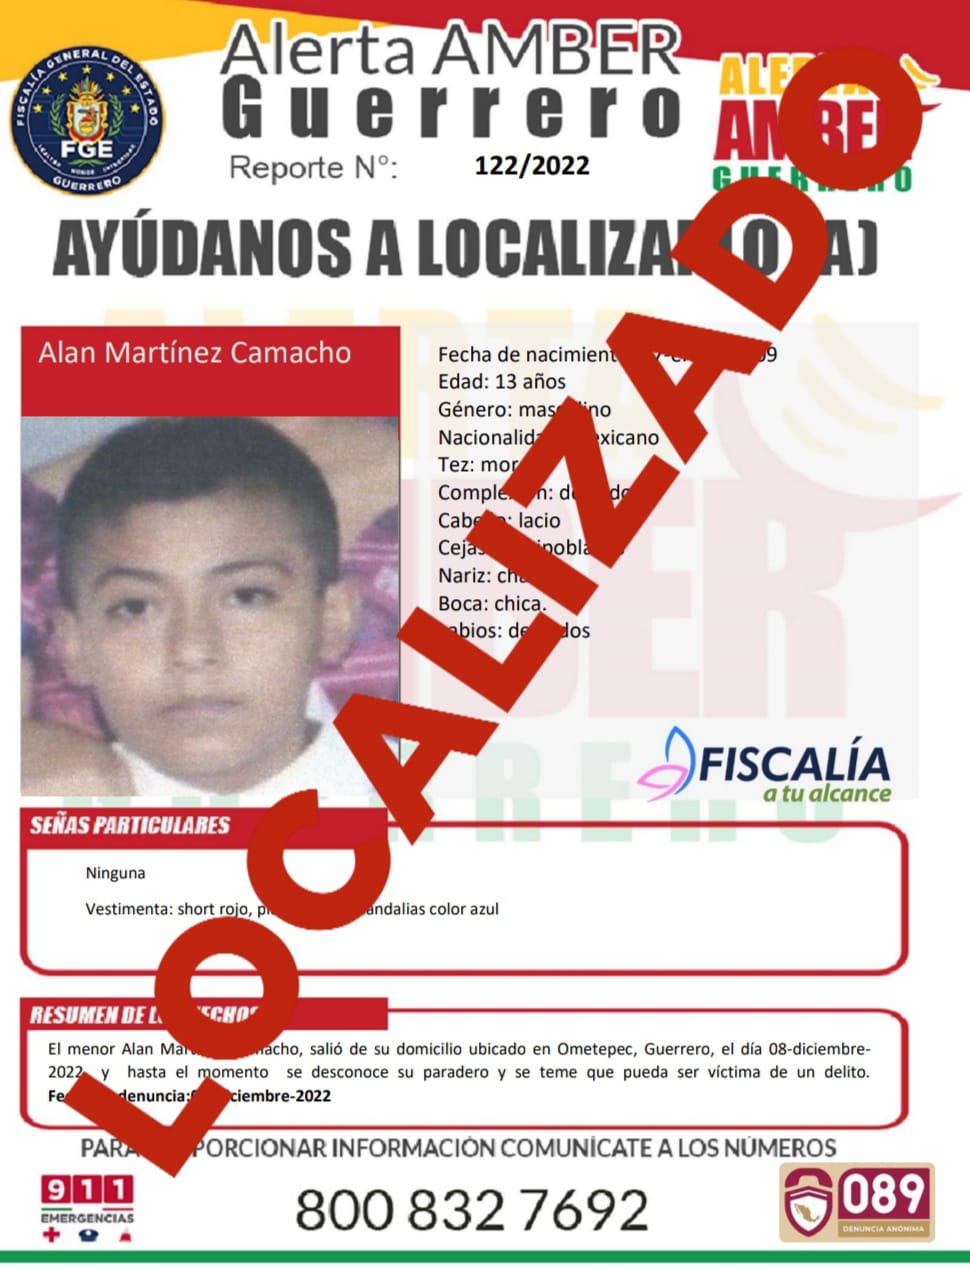 Alan Martínez Camacho Ya Fue Localizado.